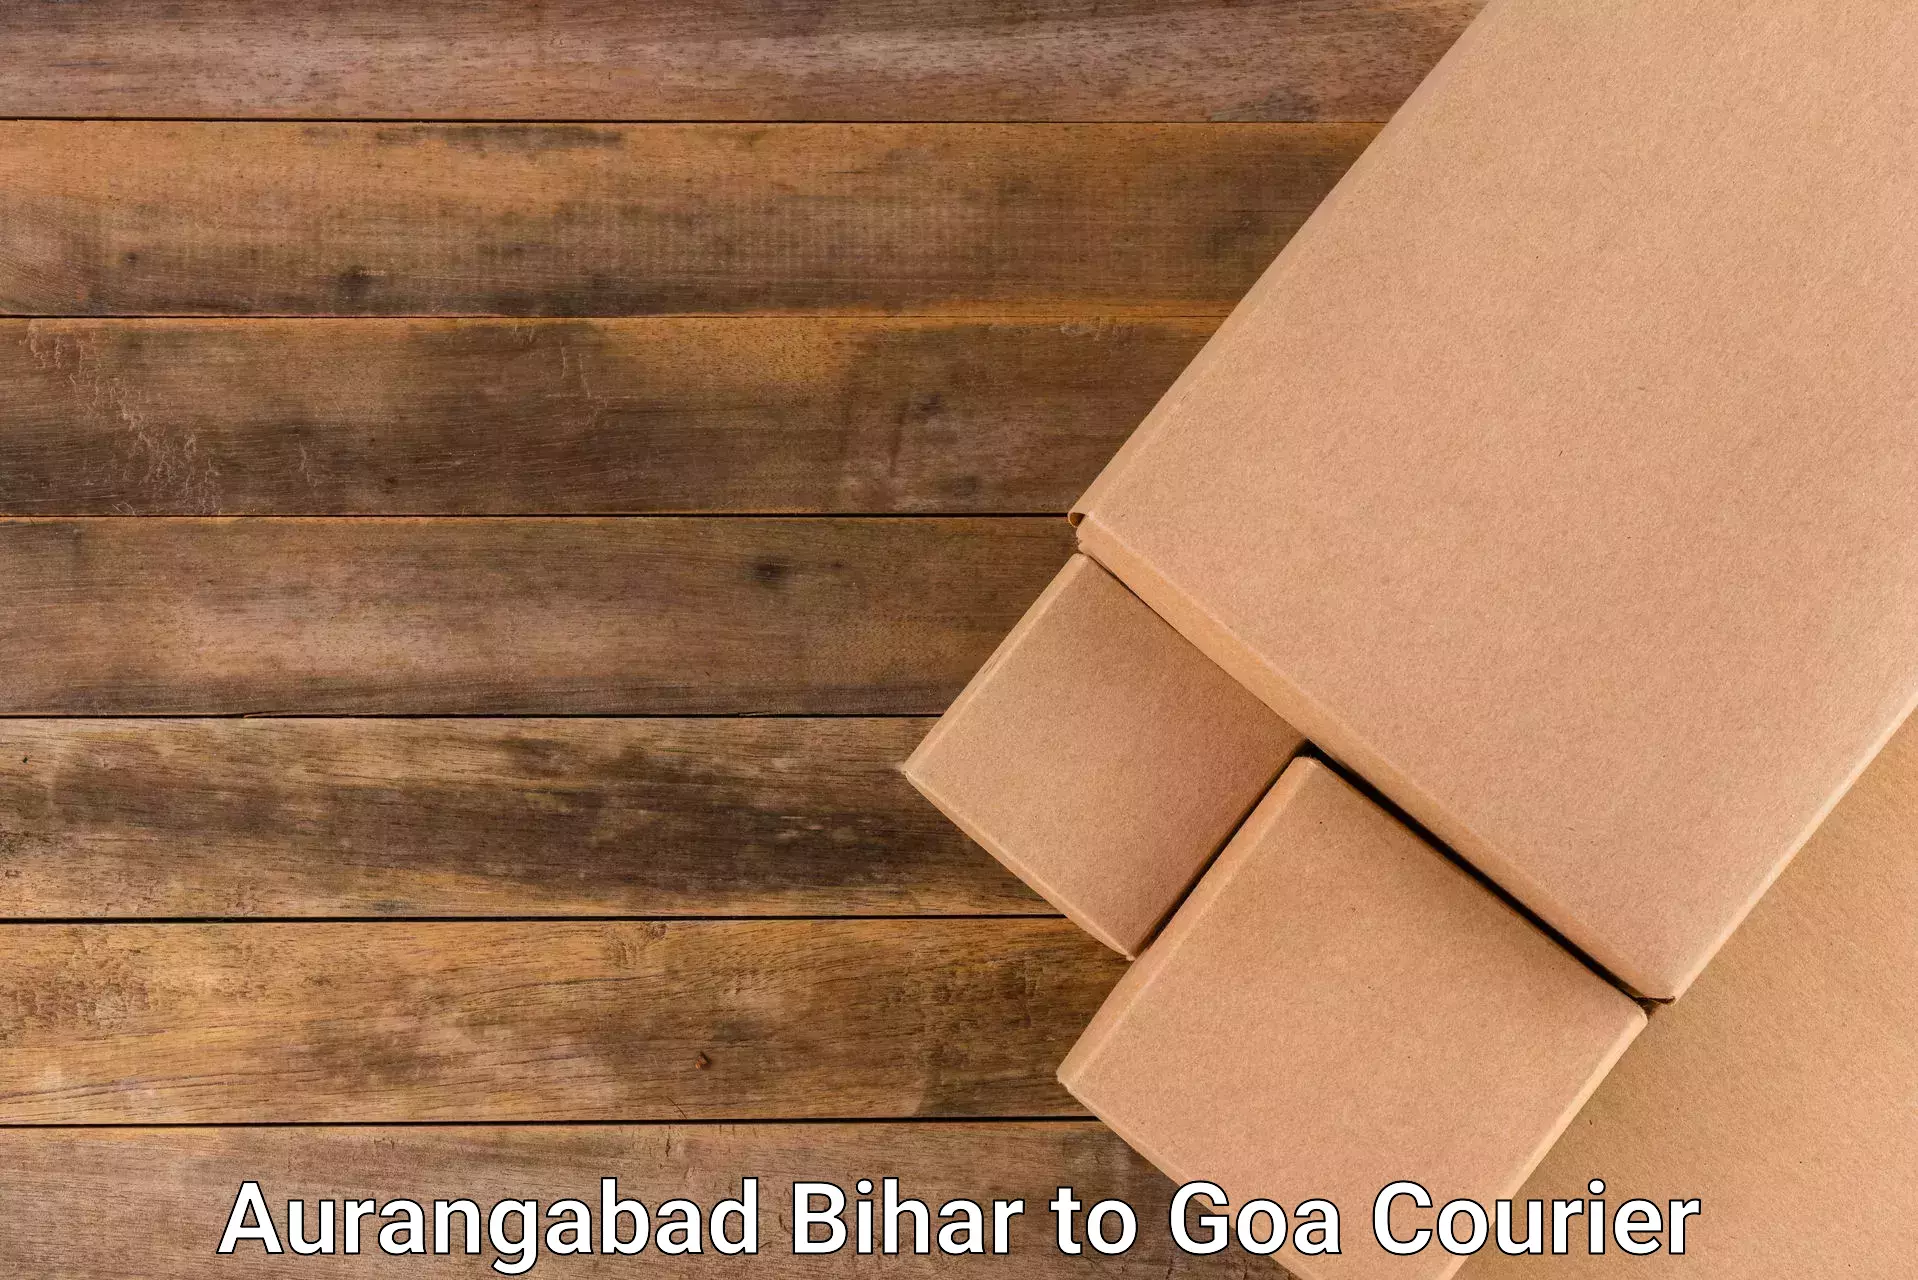 Customer-centric shipping Aurangabad Bihar to South Goa